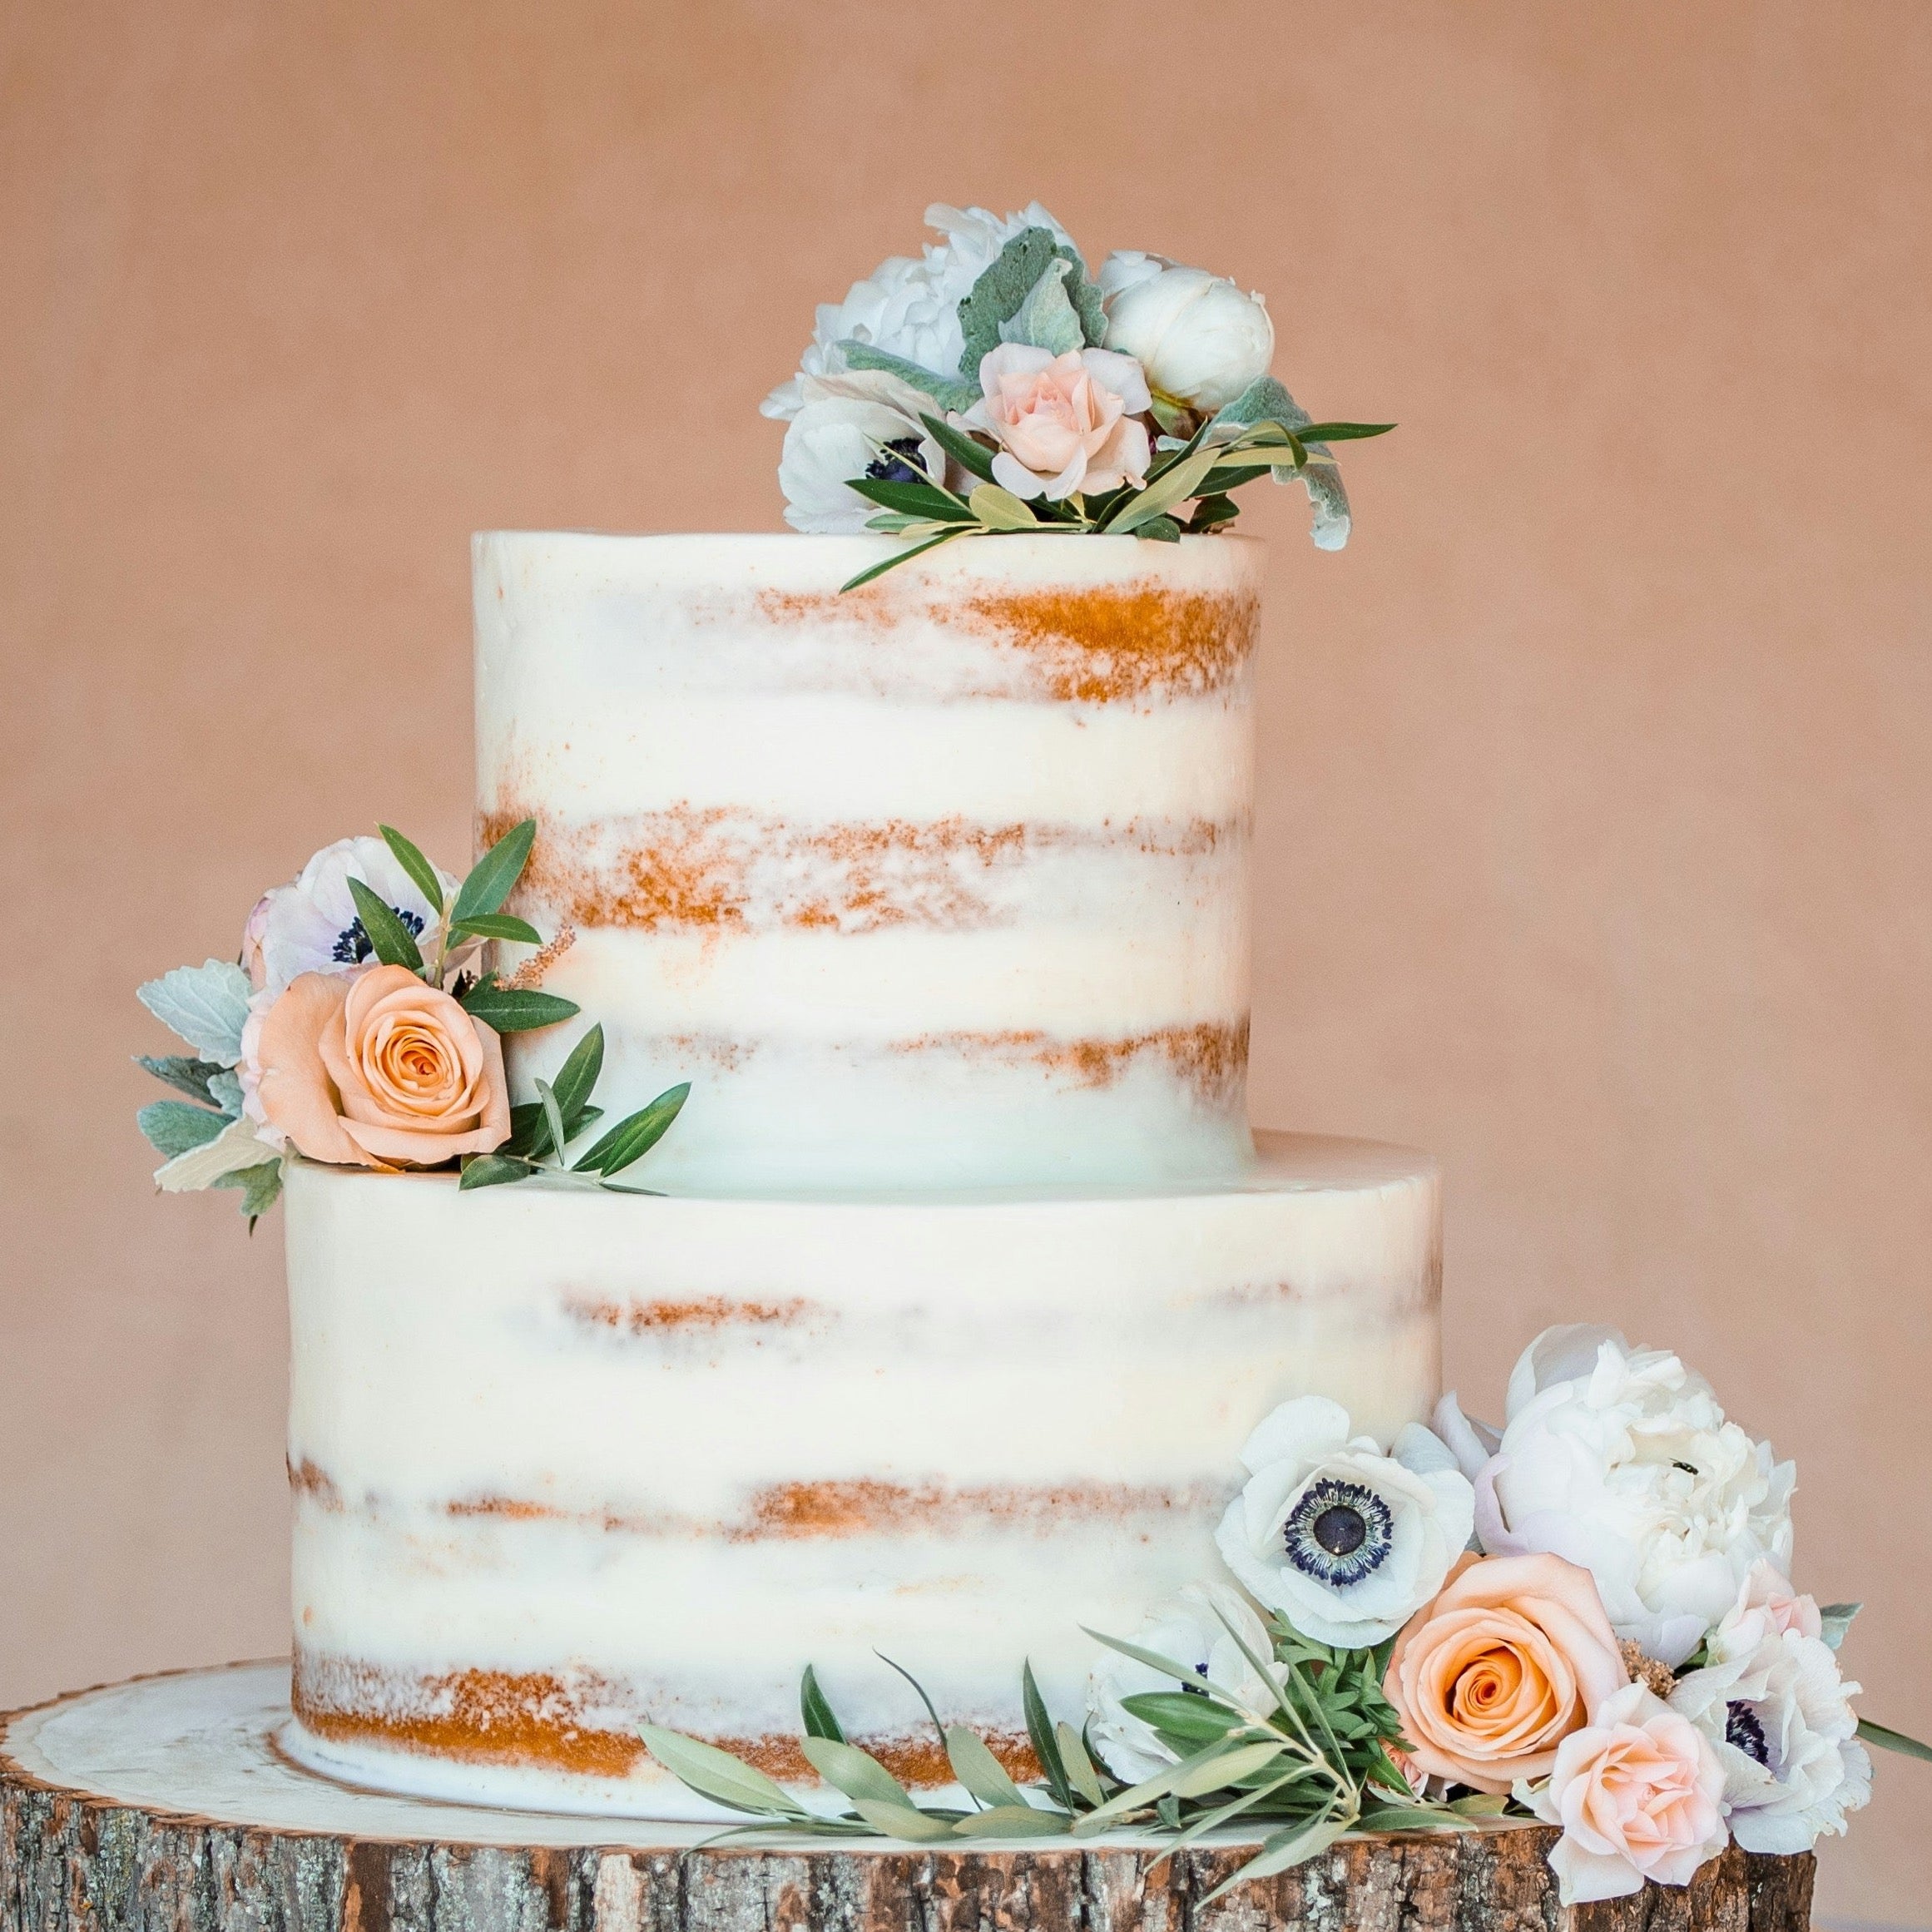 Gluten-Free Wedding Cake, 2 or 3-Tier (Serves 50 - 100)